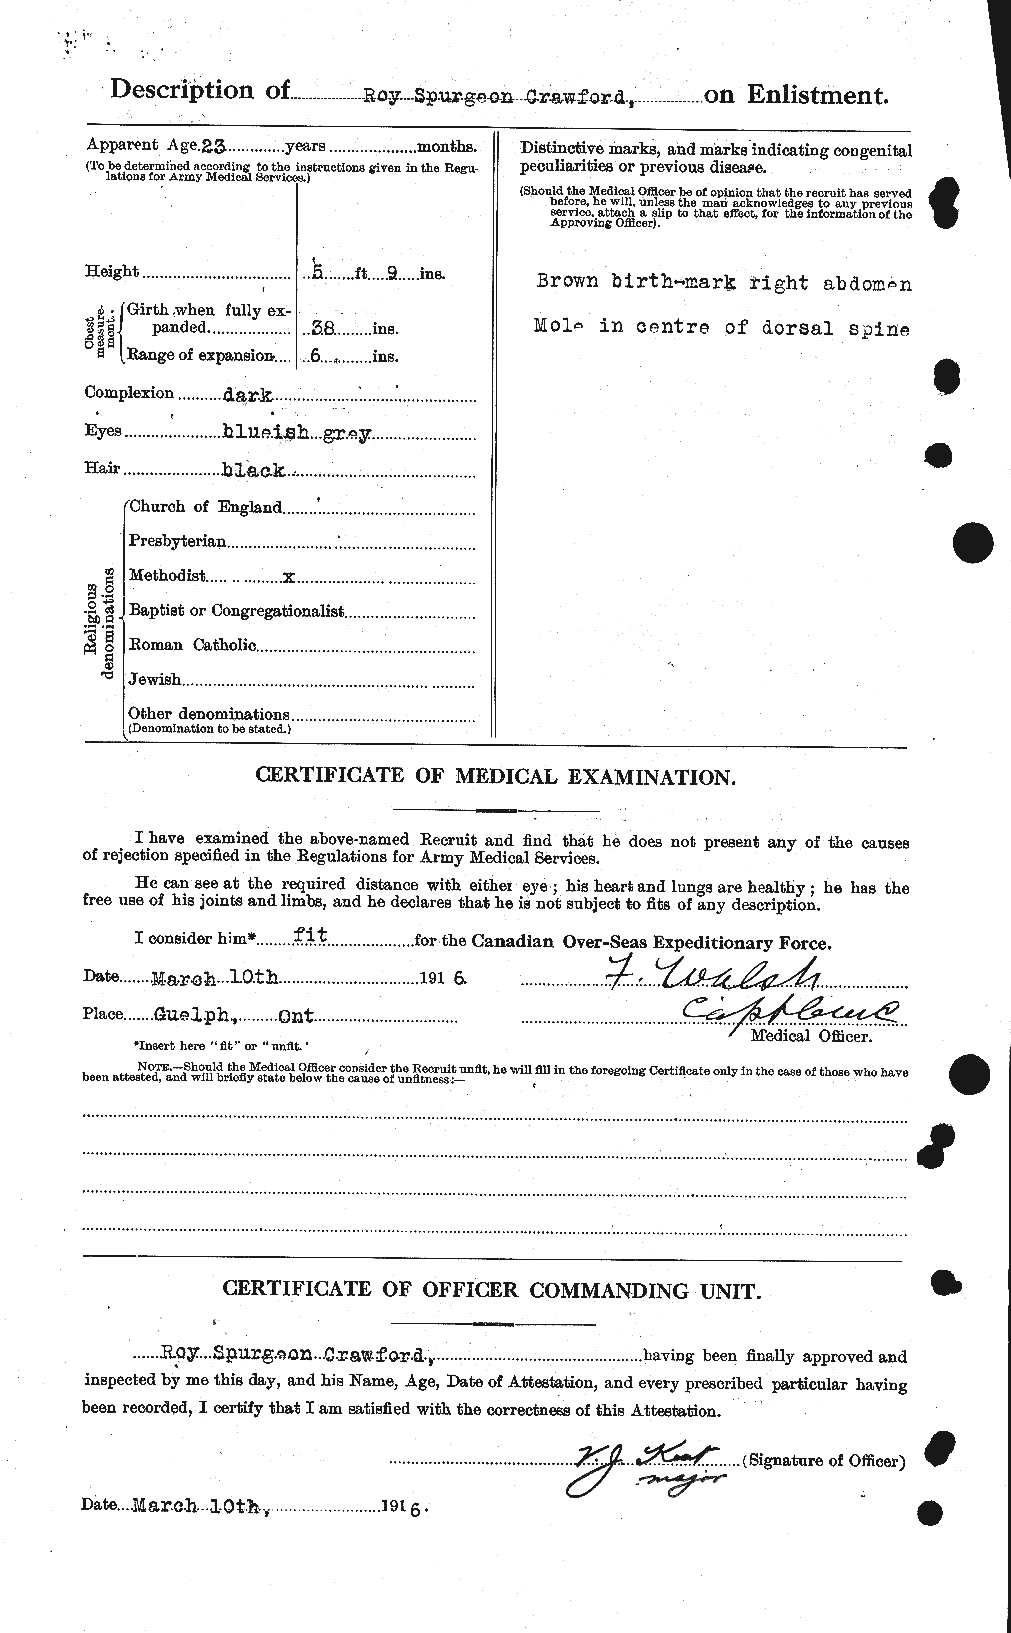 Dossiers du Personnel de la Première Guerre mondiale - CEC 061385b